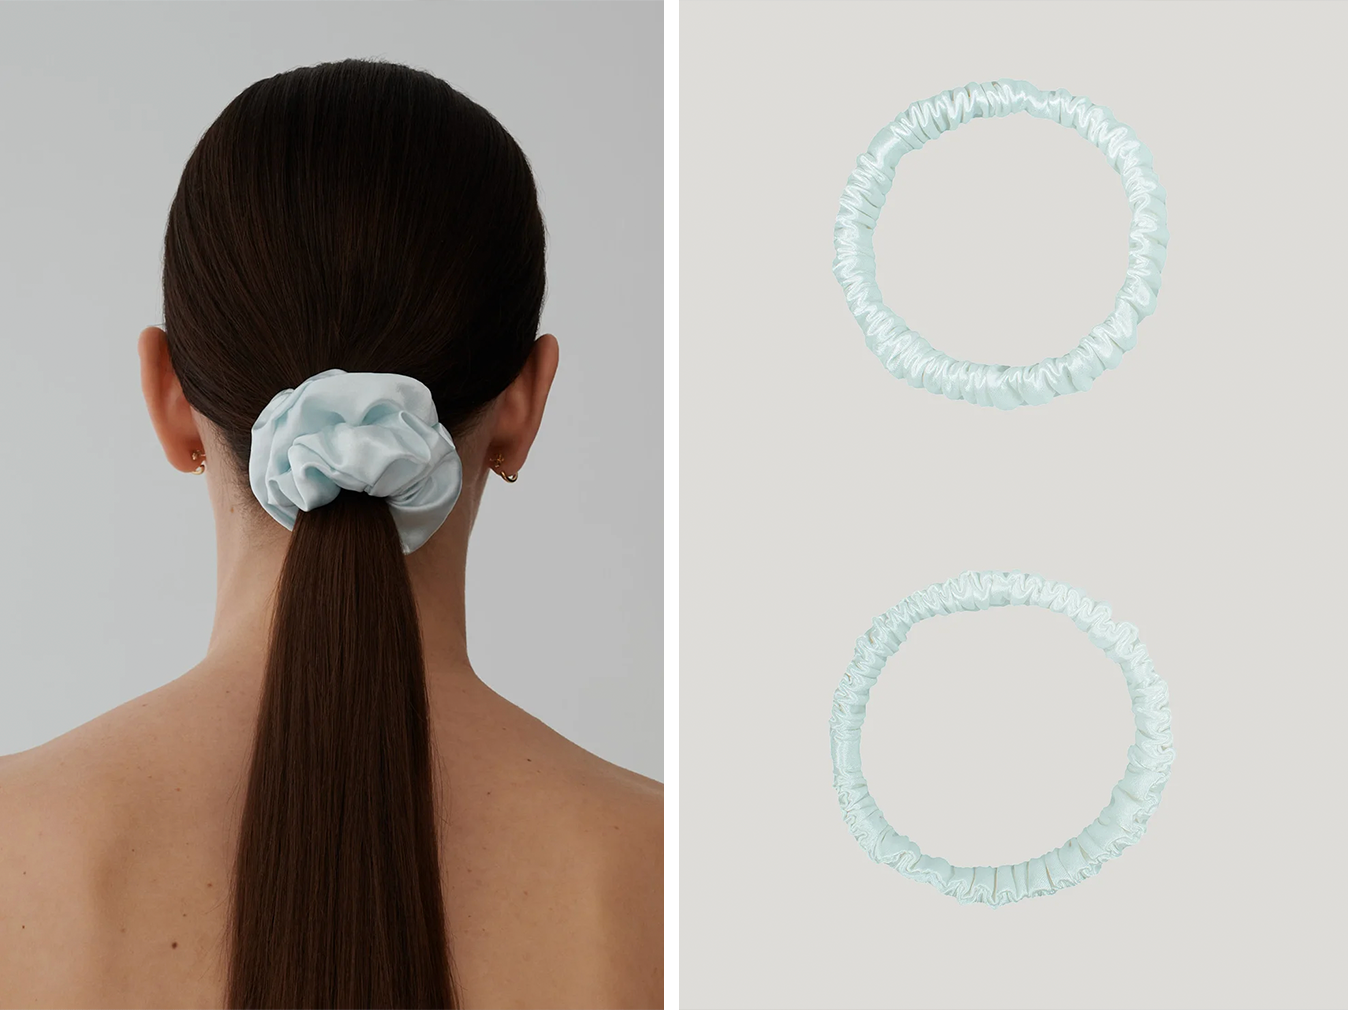 Blue silk scrunchies as bridal accessories